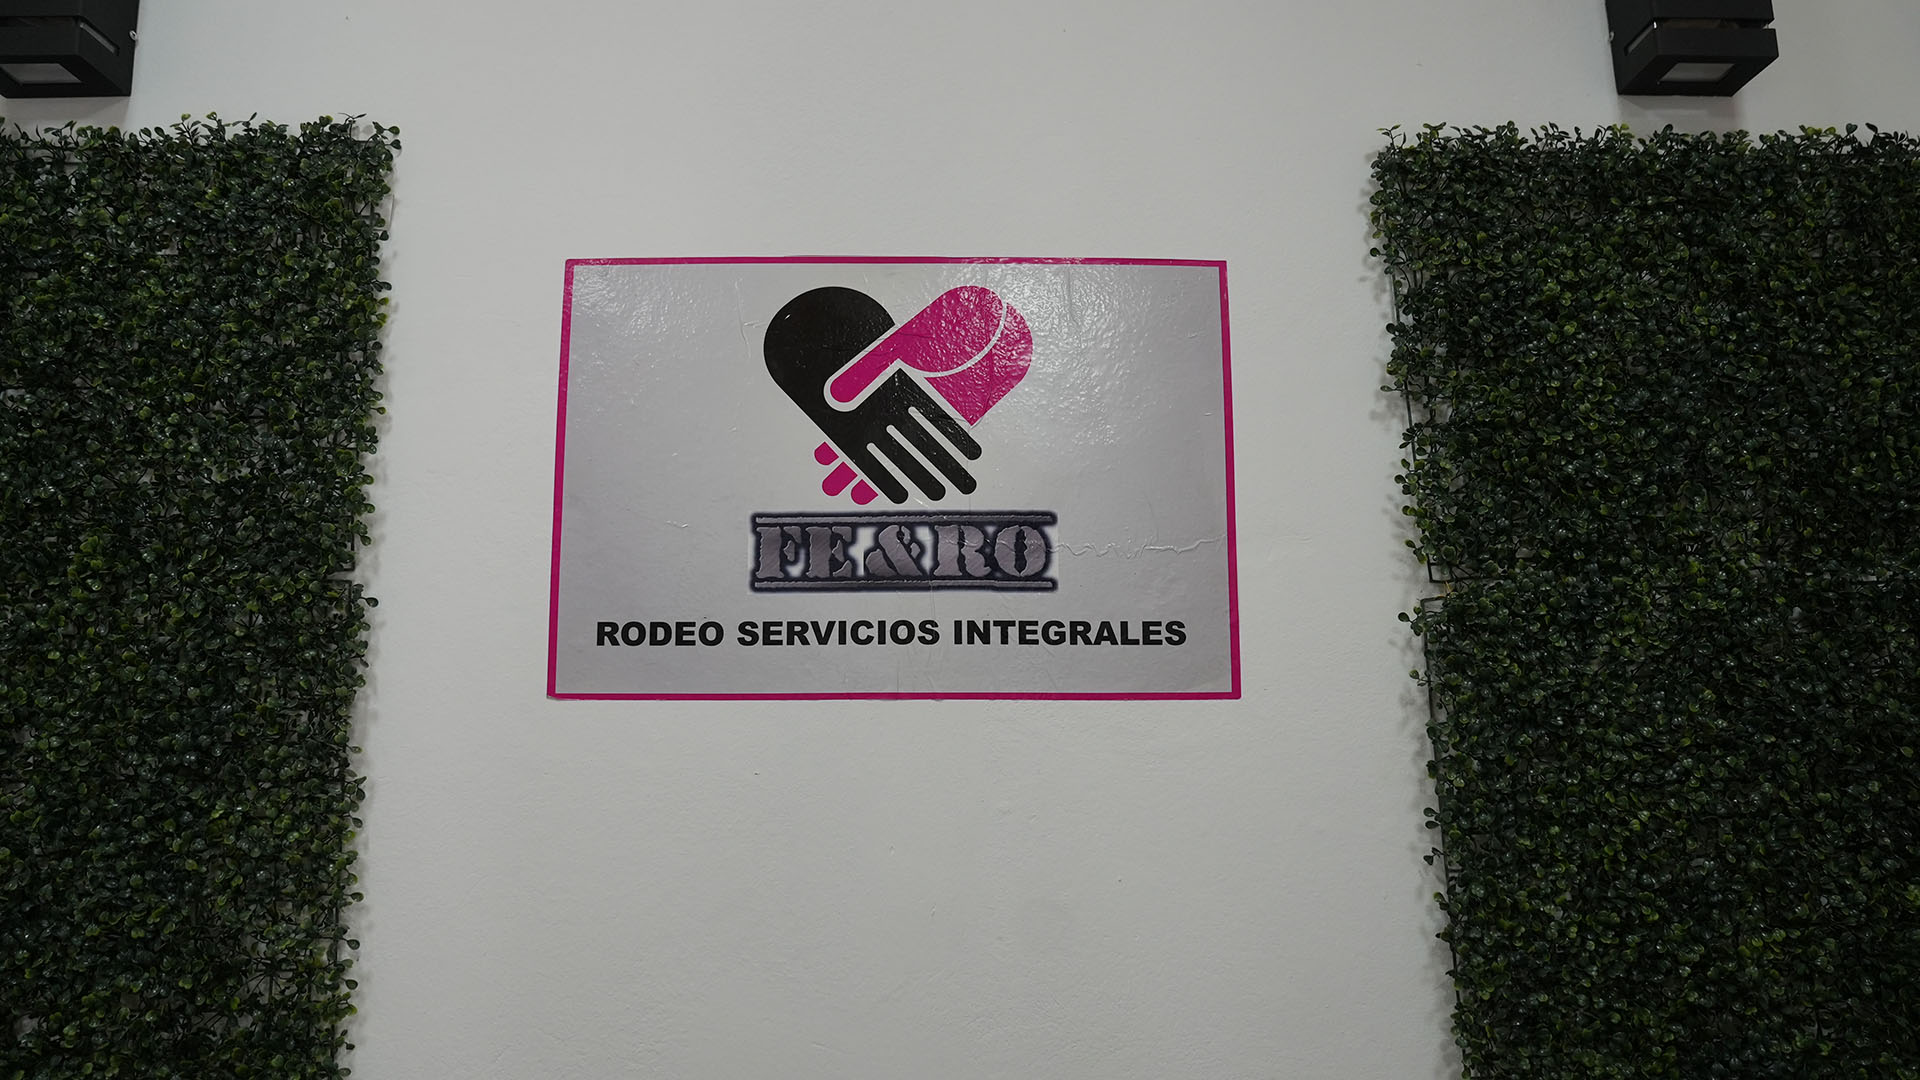 La oficina central de FEyRO se encuentra en Rodeo, Iglesia (Crédito: Matías Arbotto)